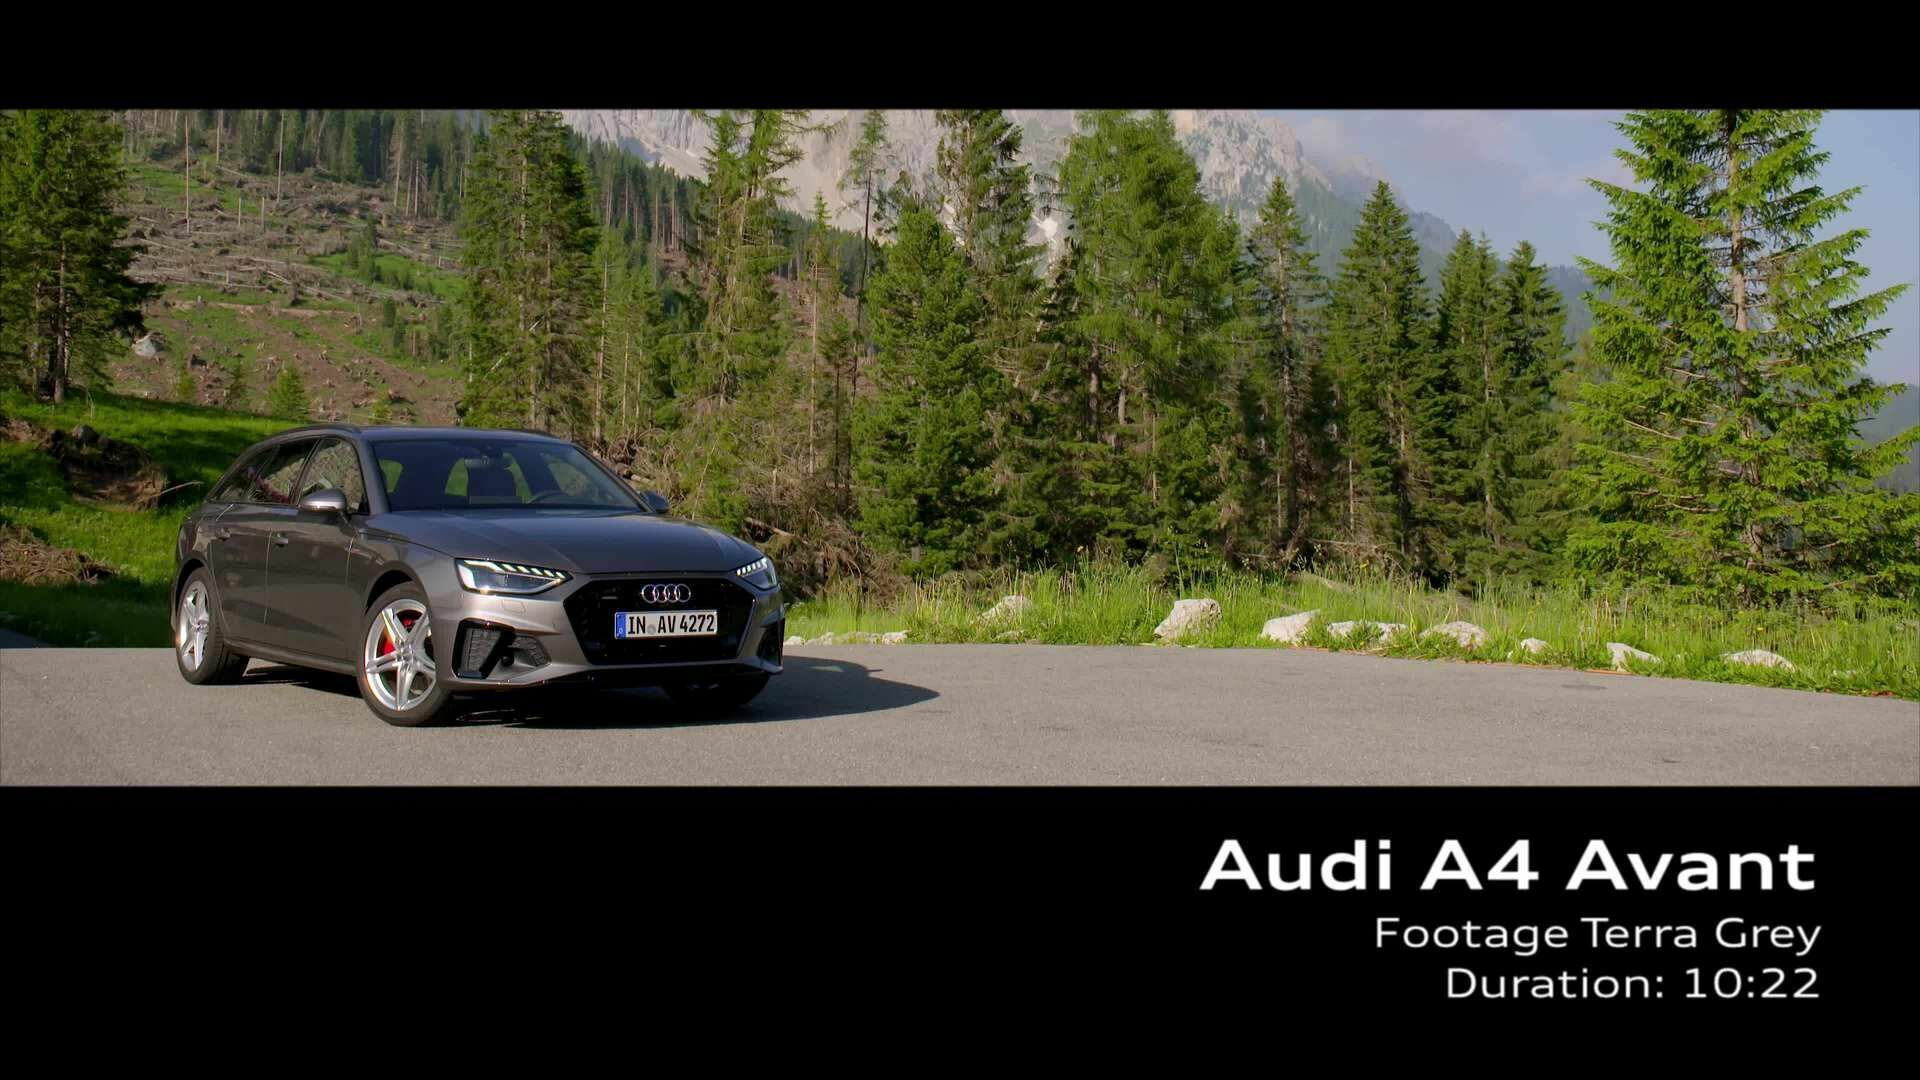 Audi A4 Avant TDI Terragrau (Footage)